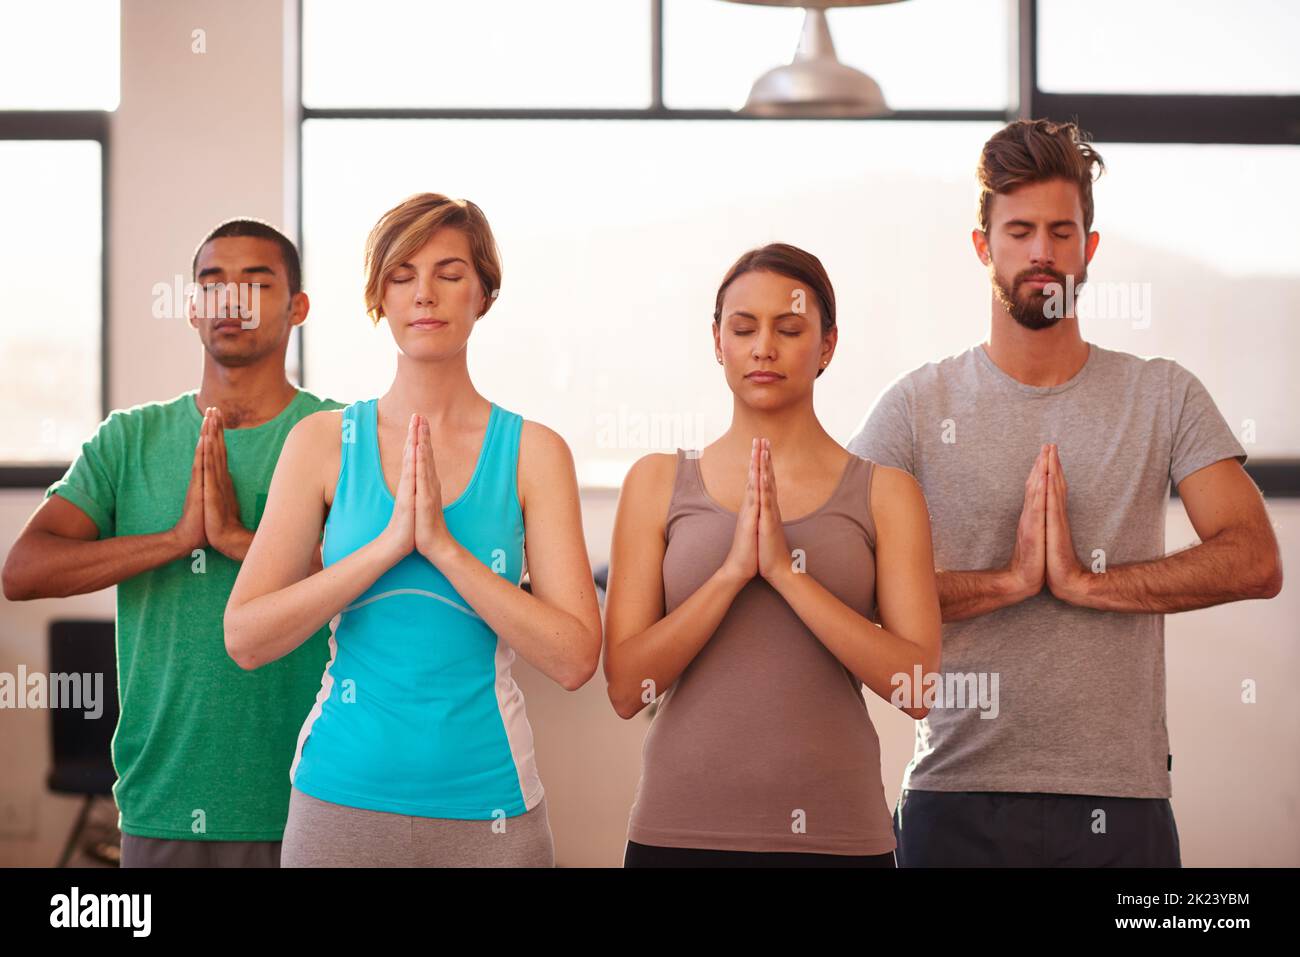 Yoga hilft dir, dein heiliges selbst zu erreichen. Eine Gruppe von Menschen, die zusammen Yoga machen. Stockfoto